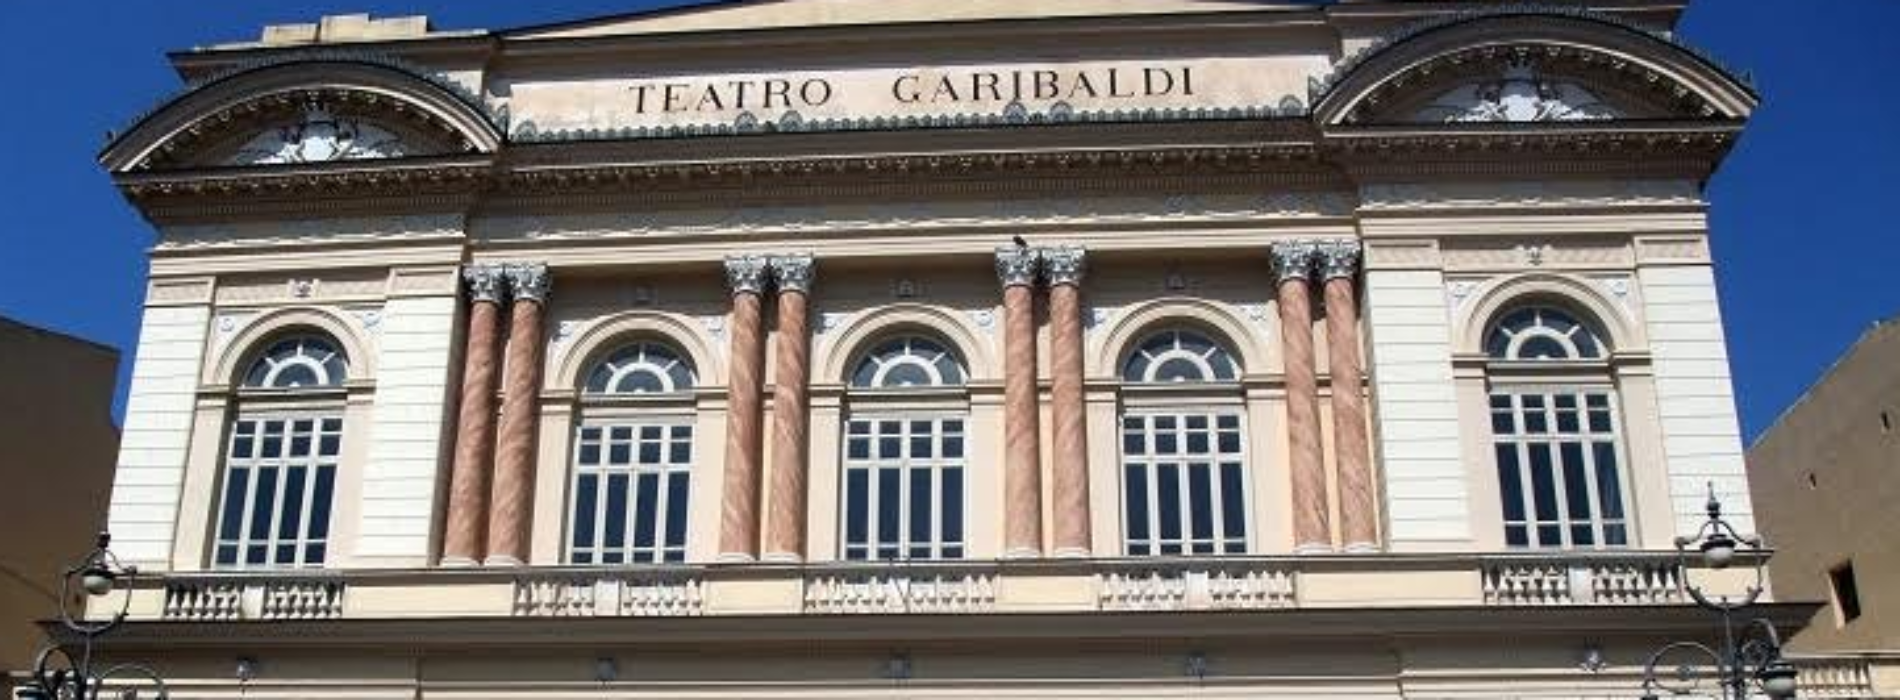 Teatro Garibaldi, dal Commissario Ricciardi alla new season